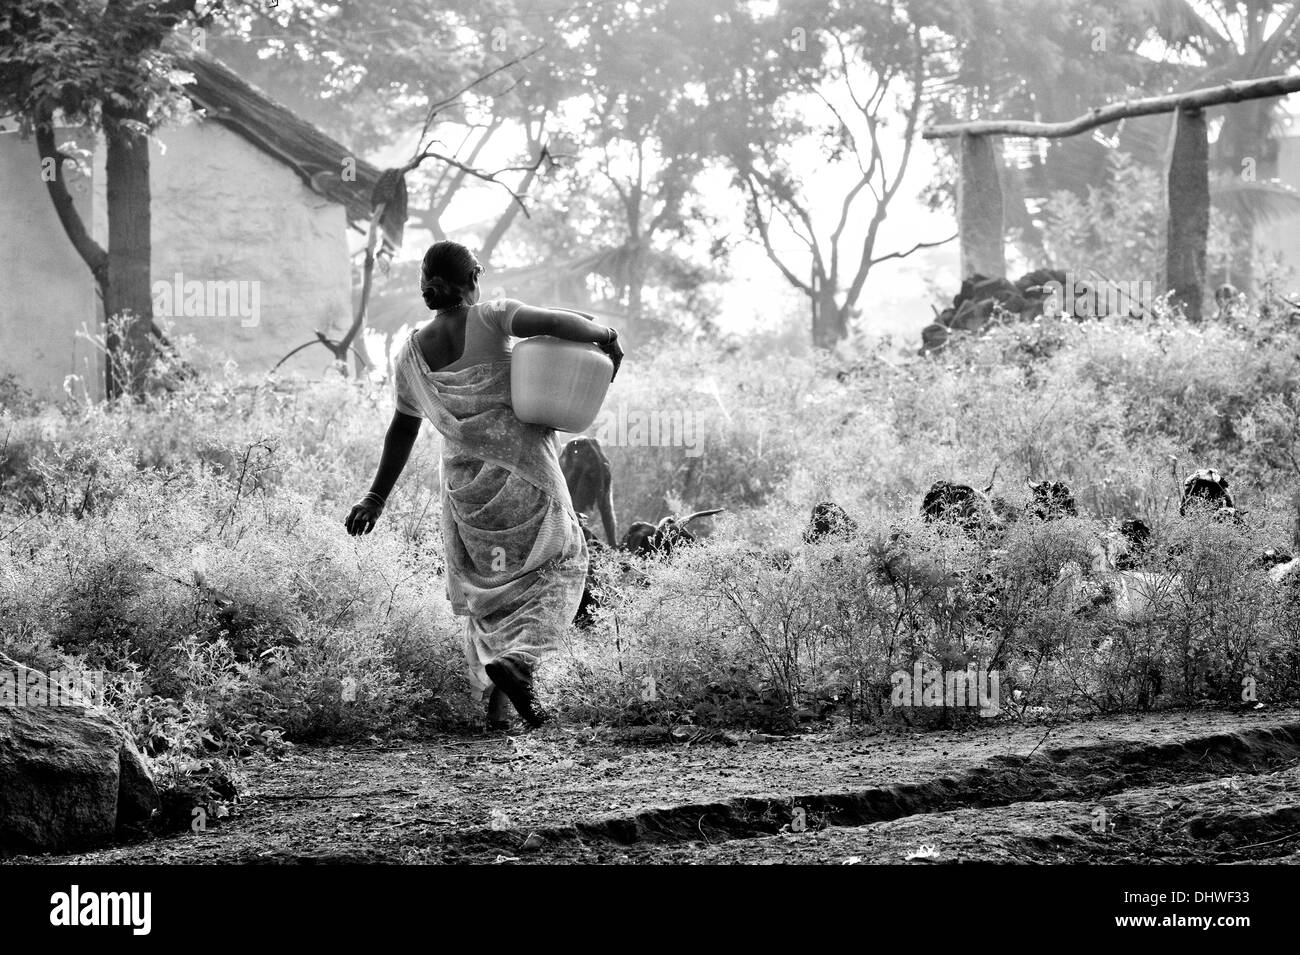 Femme indienne portant un pot en plastique avec de l'eau d'une pompe manuelle dans un village de l'Inde rurale. L'Andhra Pradesh, Inde. Noir et blanc. Banque D'Images